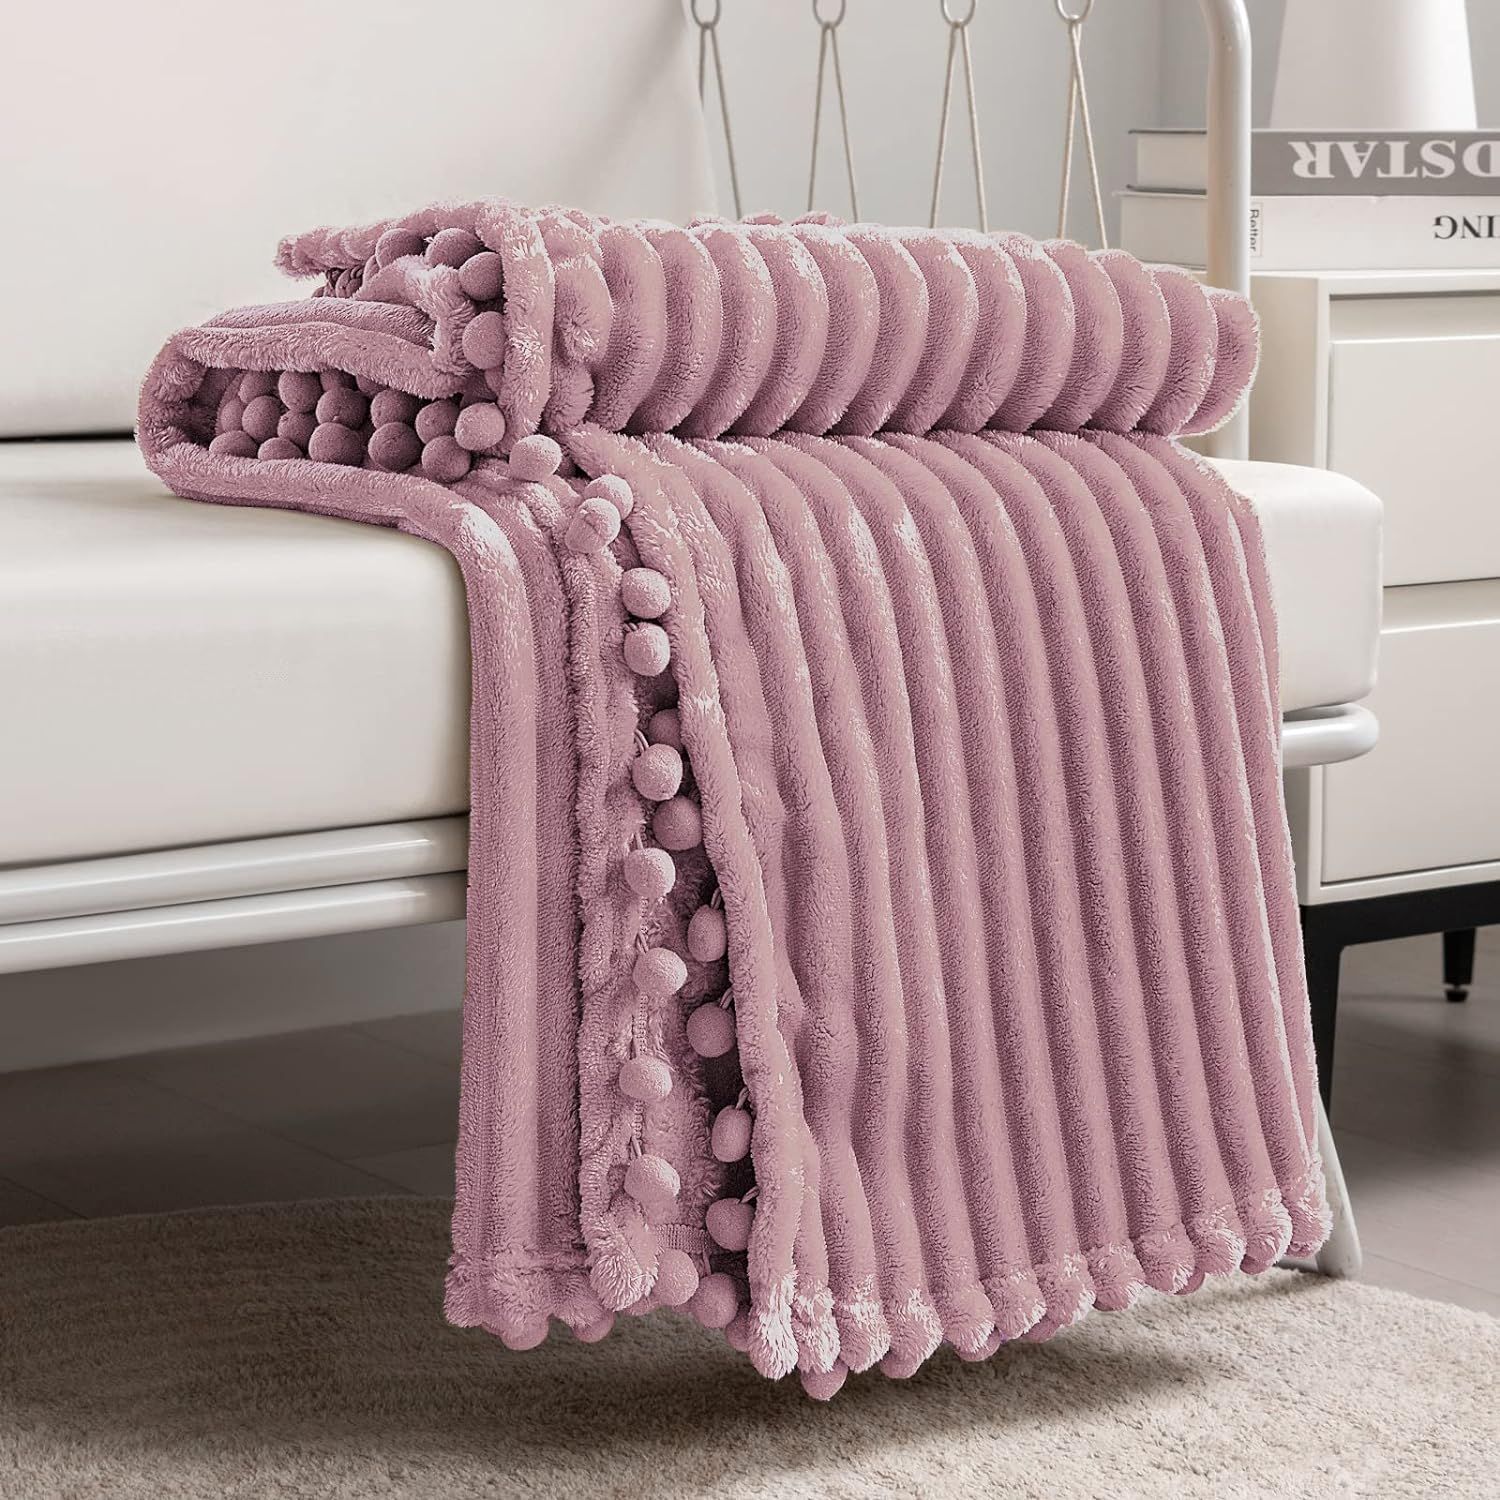 DISSA Fleece Blanket Throw Size – 51x63, Pink – Soft, Plush, Fluffy, Fuzzy, Warm, Cozy – Pe... | Amazon (US)